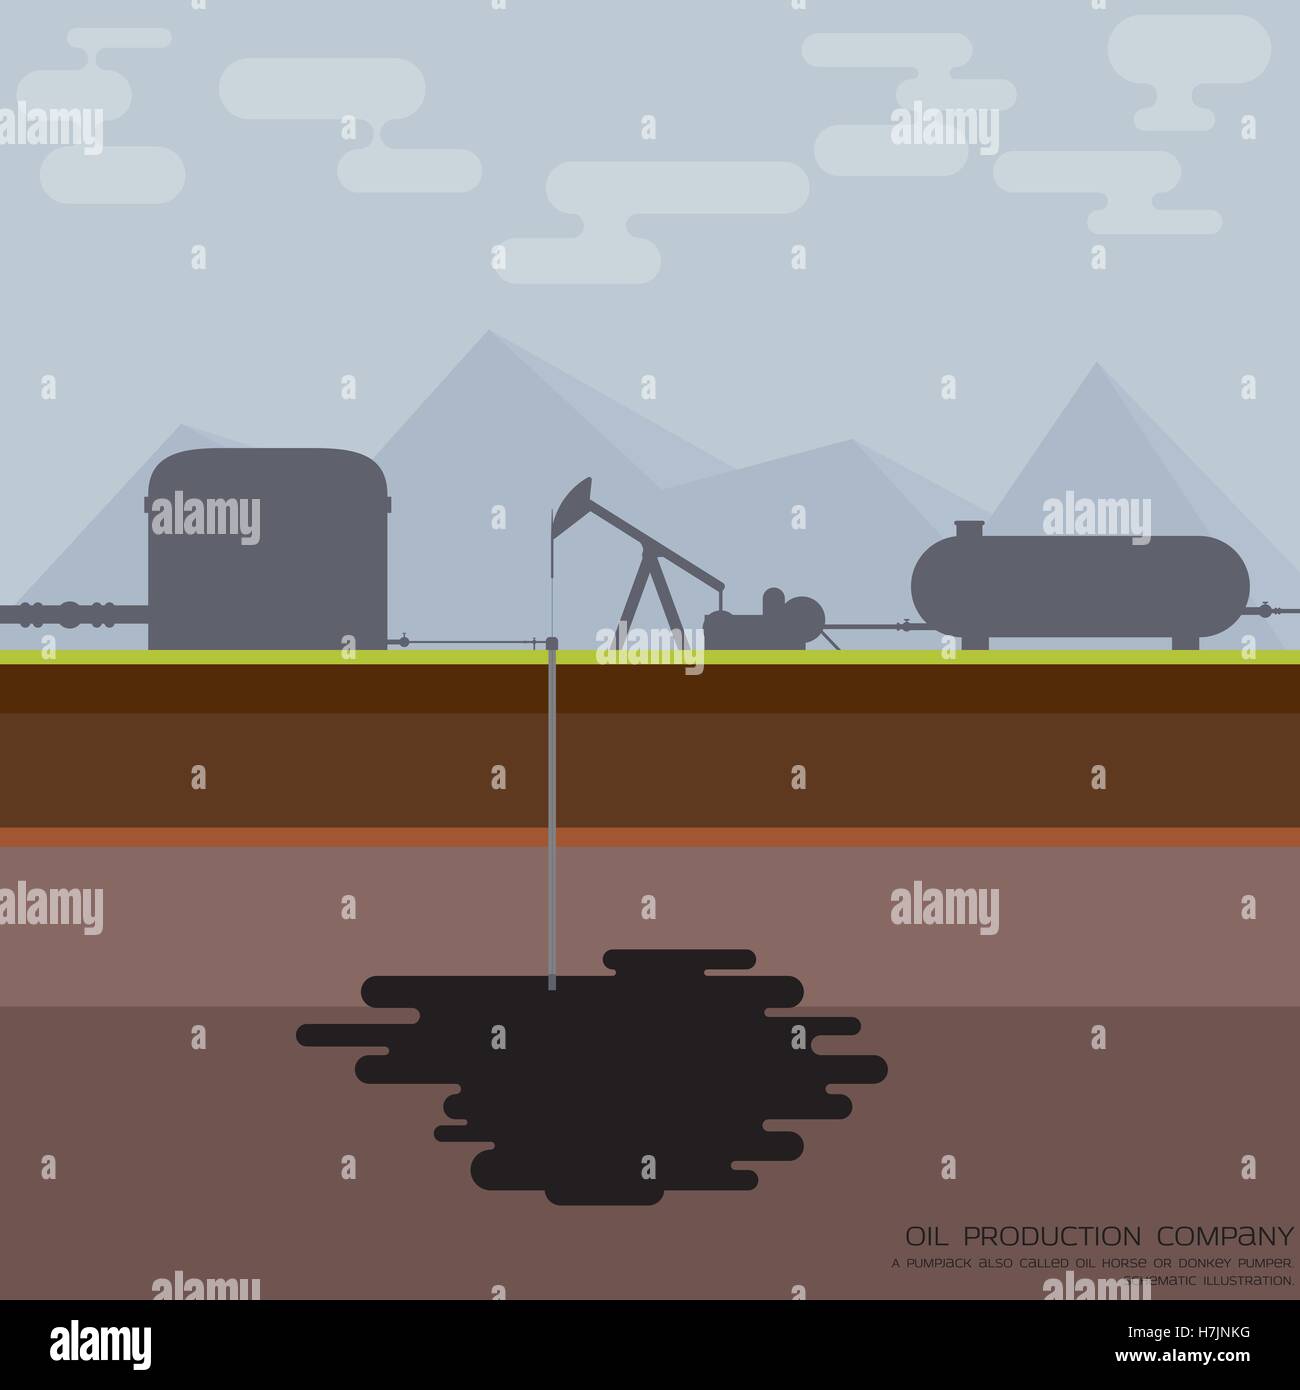 Einfache schematische Darstellung der Öl Pumpe aka nickend Esel, Bergbau-Öl. Abgerundete Rechtecke. Stock Vektor